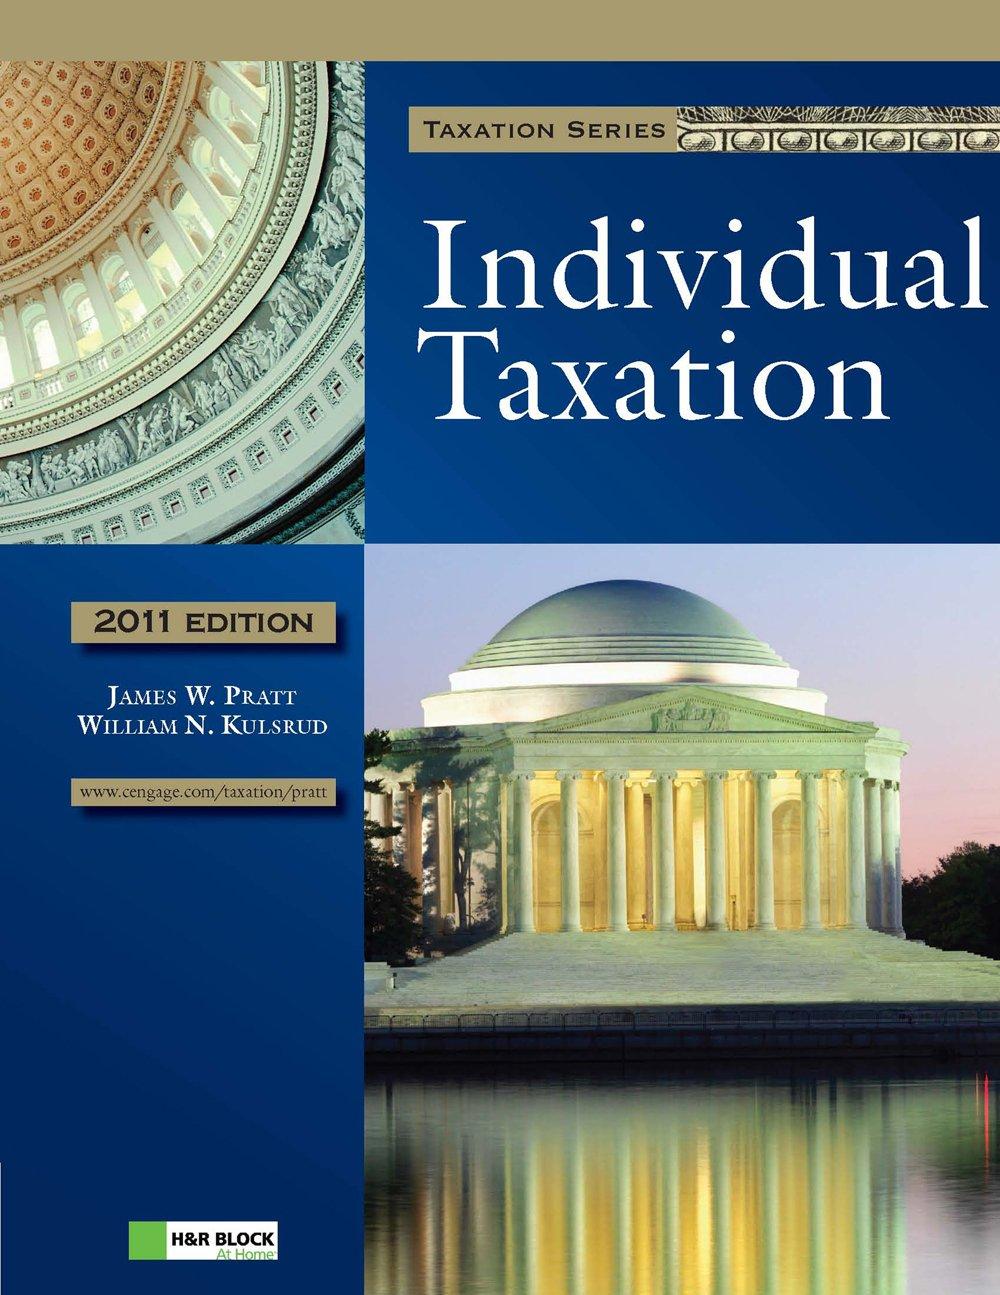 individual taxation 2011 edition james w. pratt, william n. kulsrud 111122160x, 9781111221607